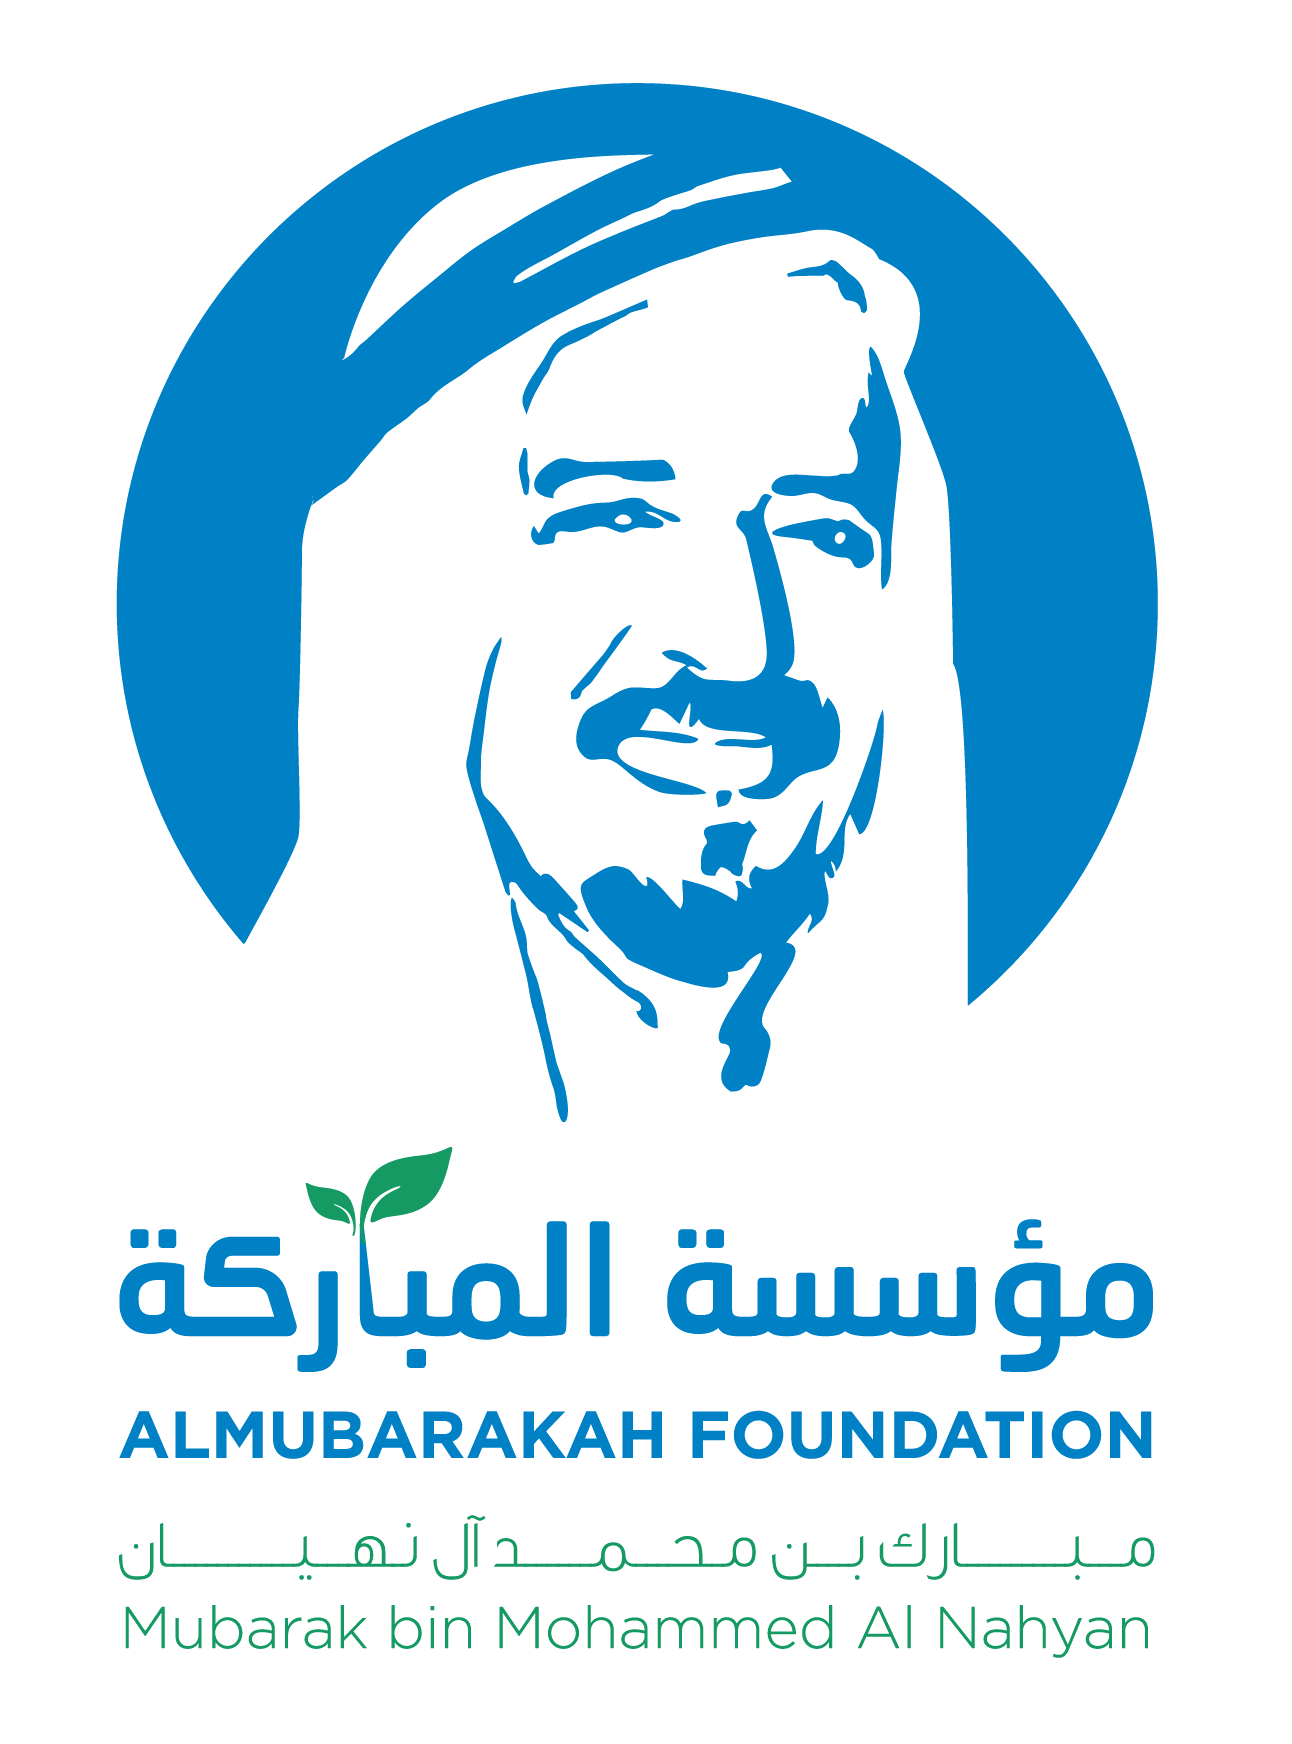 Al Mubarakah